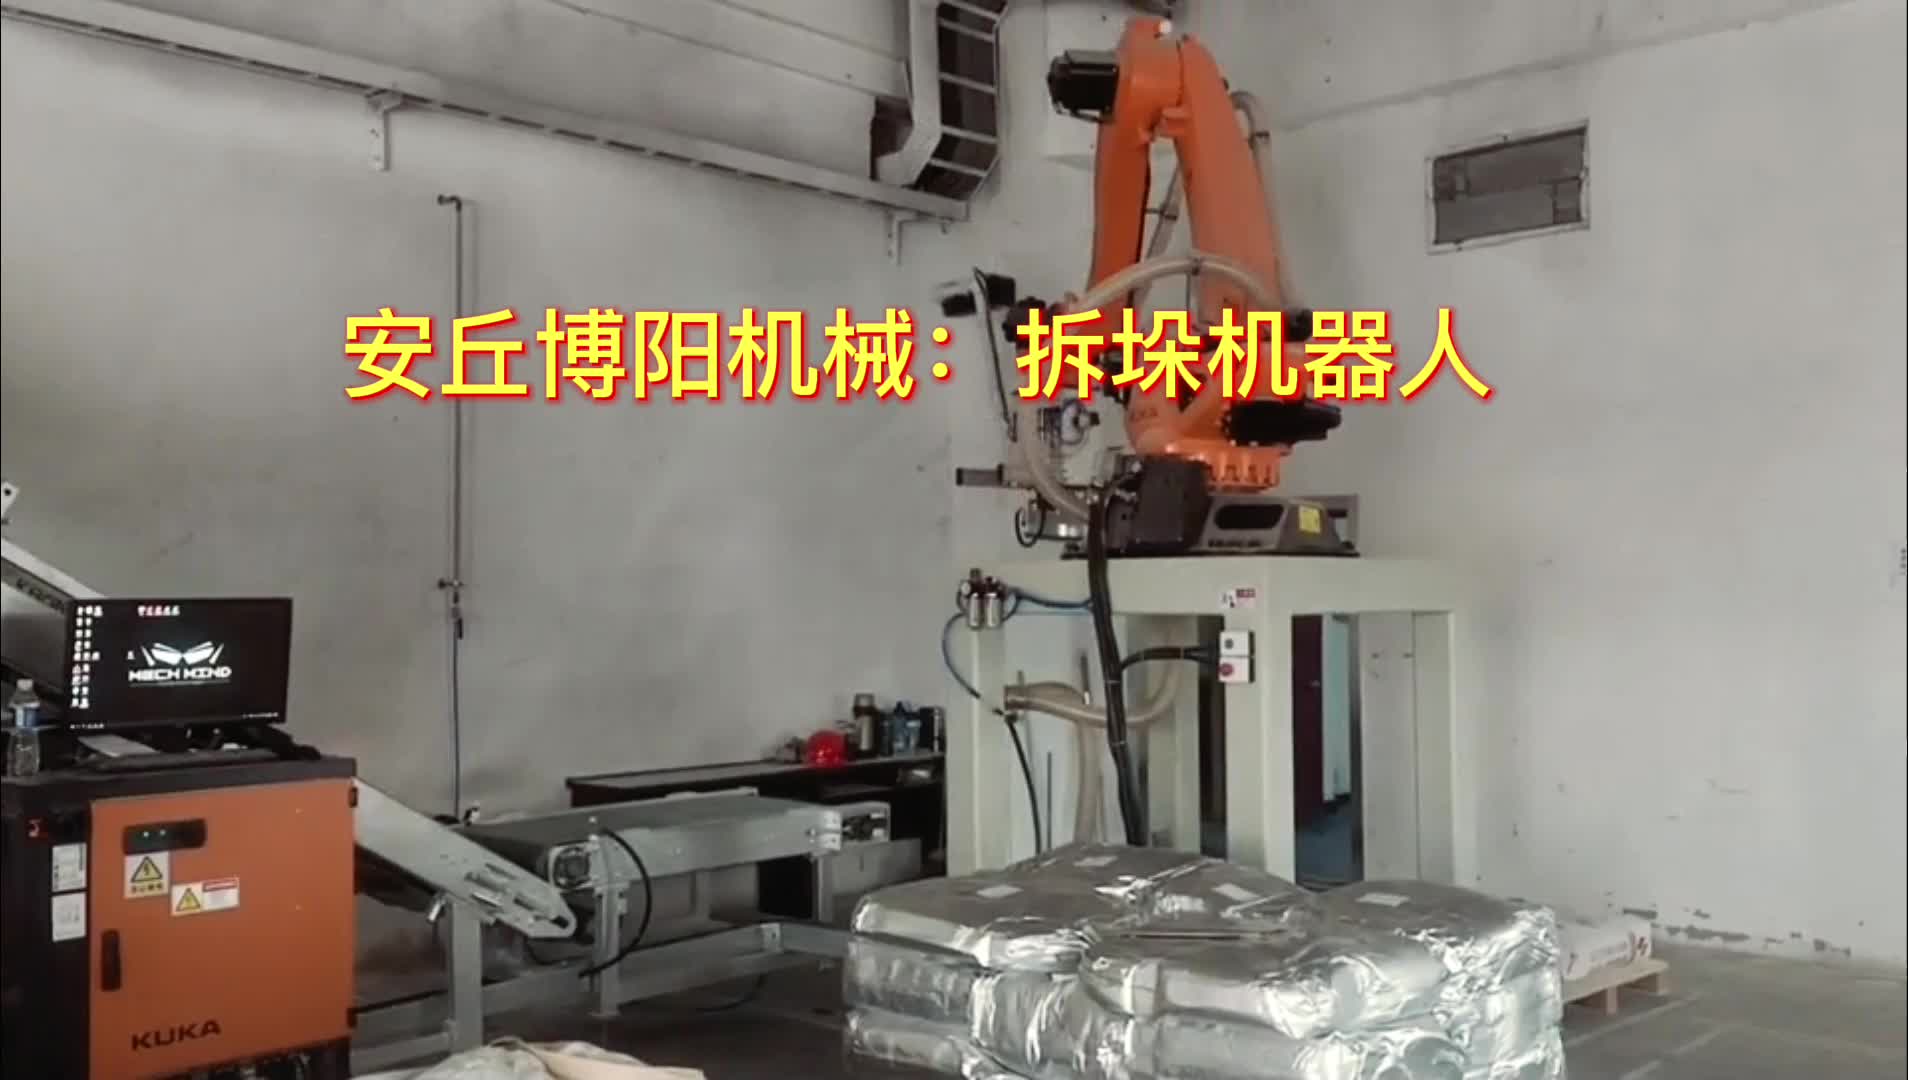 铝粉自动拆垛机器人  全自动拆垛拆包机生产线#拆包机器人 #自动化生产线 